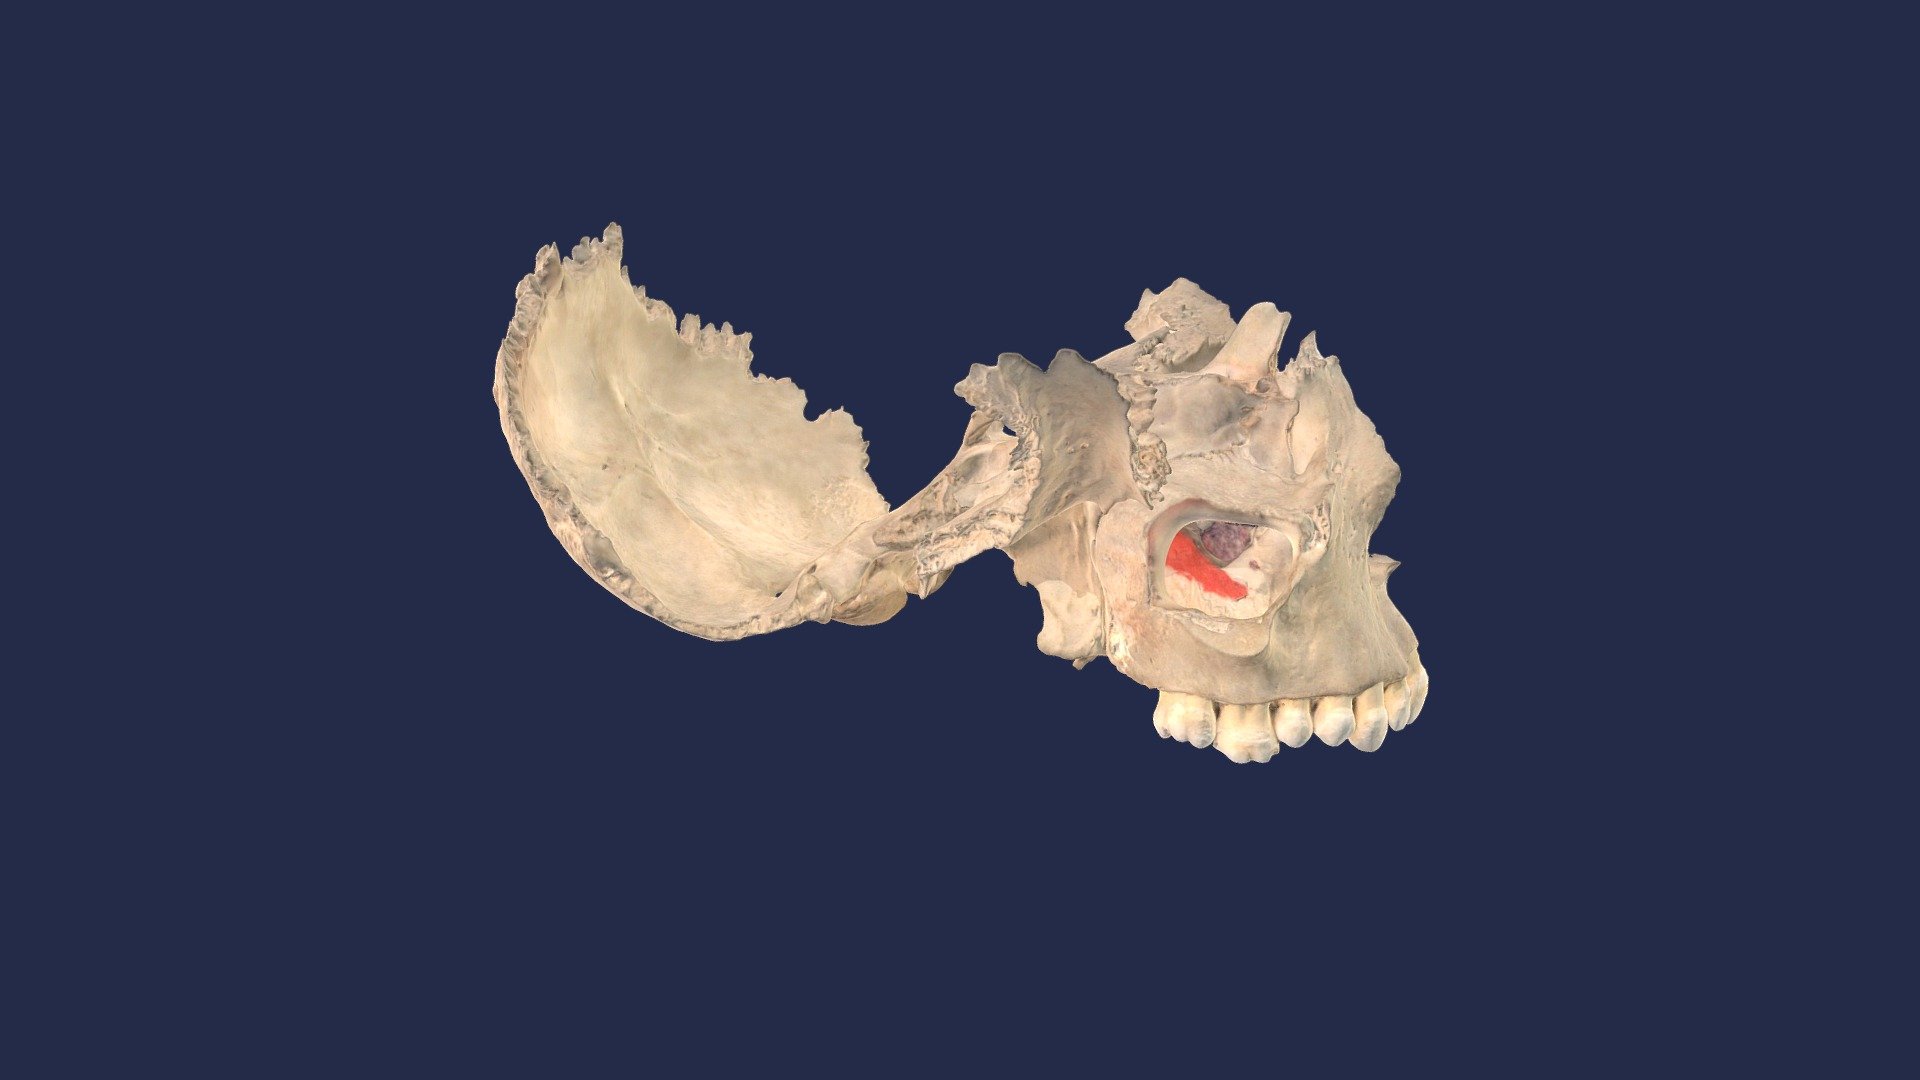 Hier ist ein Knochenpräparat eines Teils der Schädelbasis zu sehen (Os occipitale, Os sphenoidale, Os ethmoidale und Os palatinum). Die Bereiche der Nasengänge und des Sinus maxillaris sind aufrund der begrenzten Leistung des Scanners artifiziell verändet (verdickt).

This shows a bone preparation of part of the skull base (Os occipitale, Os sphenoidale, Os ethmoidale and Os palatinum). The areas of the nasal passages and the maxillary sinus are artificially deformed due to the limited capabilities of the scanner.

Institut für Anatomie, Universitätsmedizin Rostock
Institute of Anatomy, Rostock University Medical Center - Schädel (Maxilla, Os Occipitale, Os Sphenoidale) - 3D model by Institute of Anatomy Rostock (@Alexander.Hawlitschka) 3d model